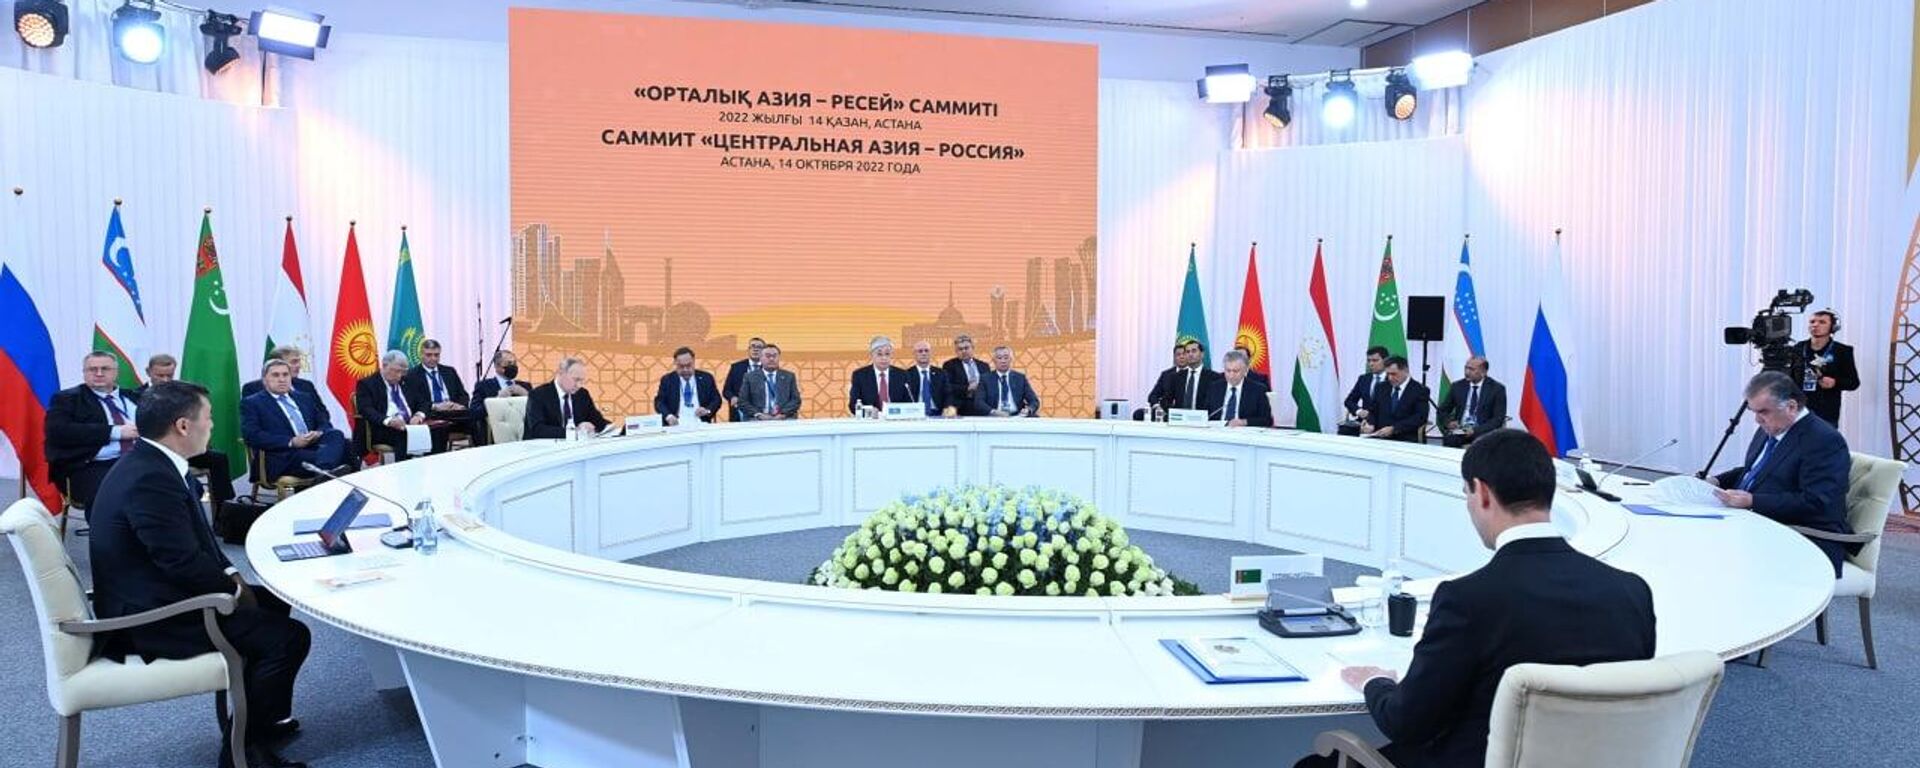 Саммит Центральная Азия - Россия - Sputnik Қазақстан, 1920, 14.10.2022